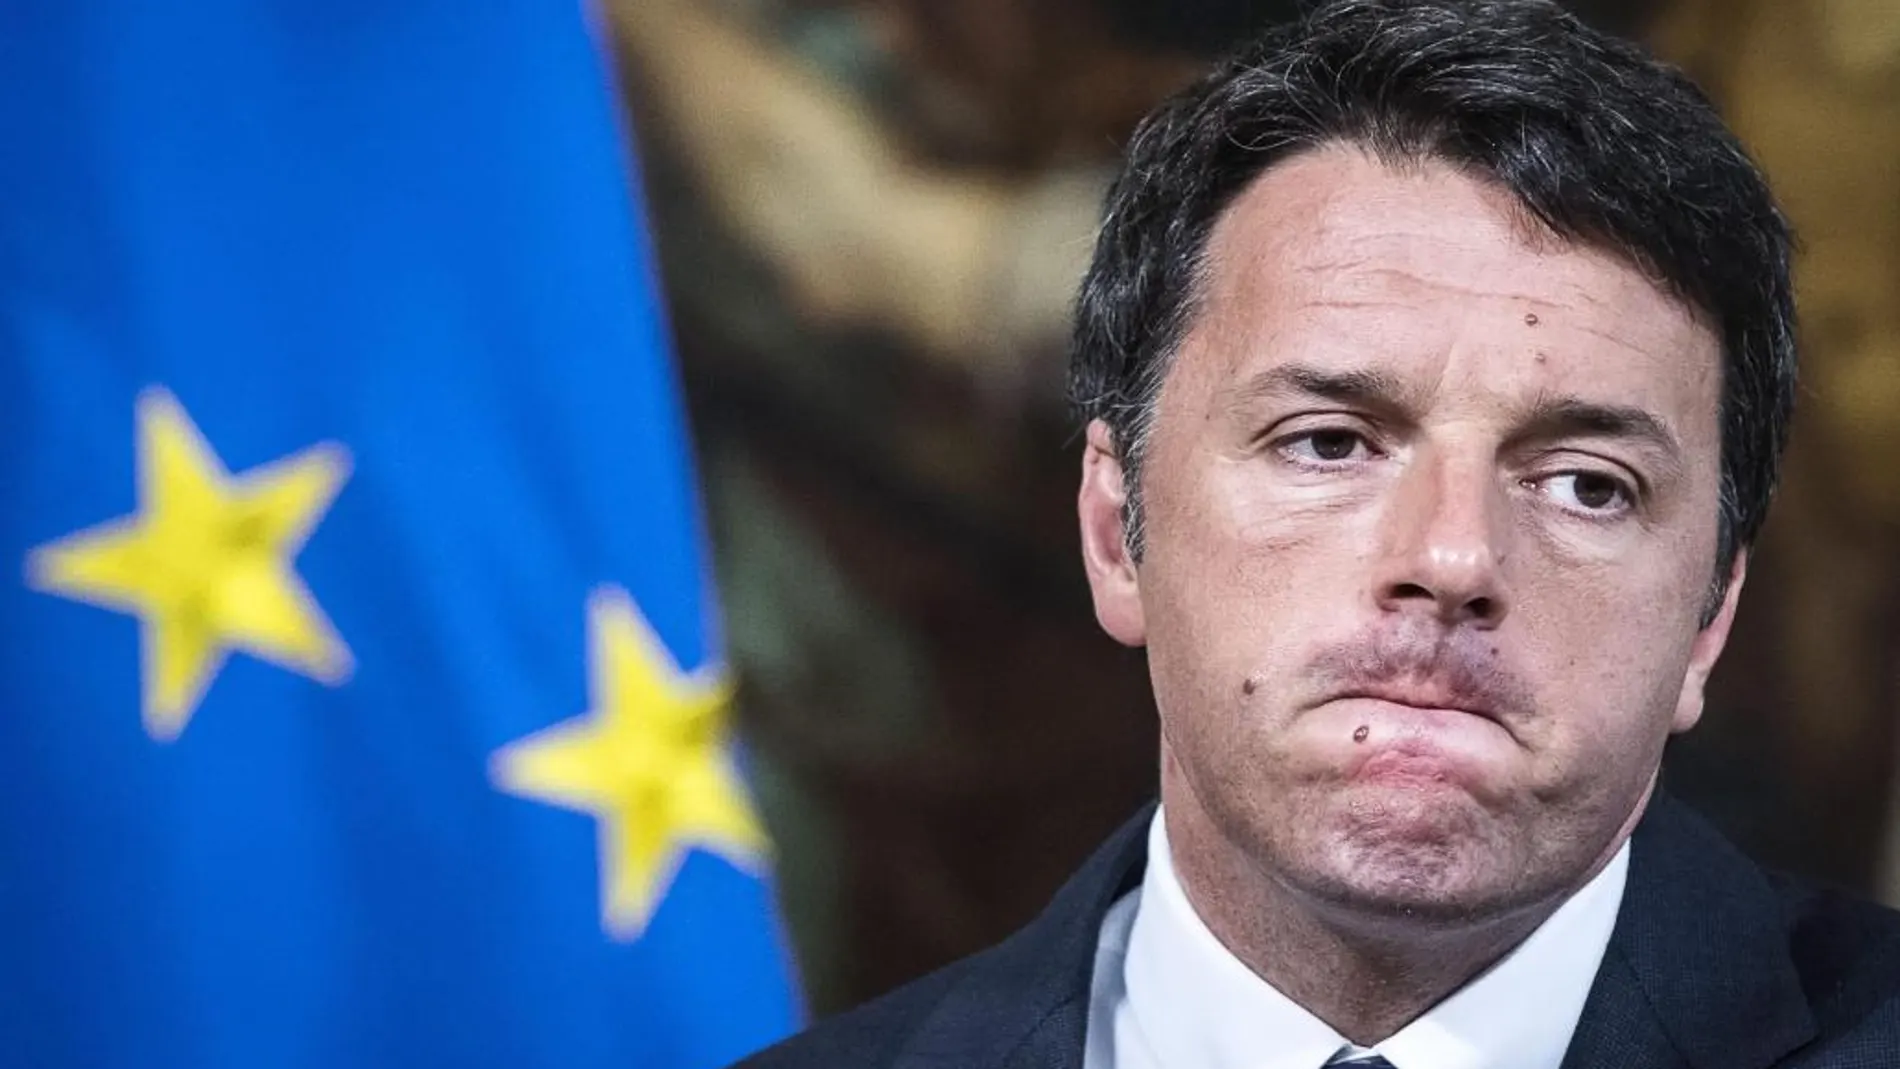 Renzi, de la esperanza a la decepción en 34 meses